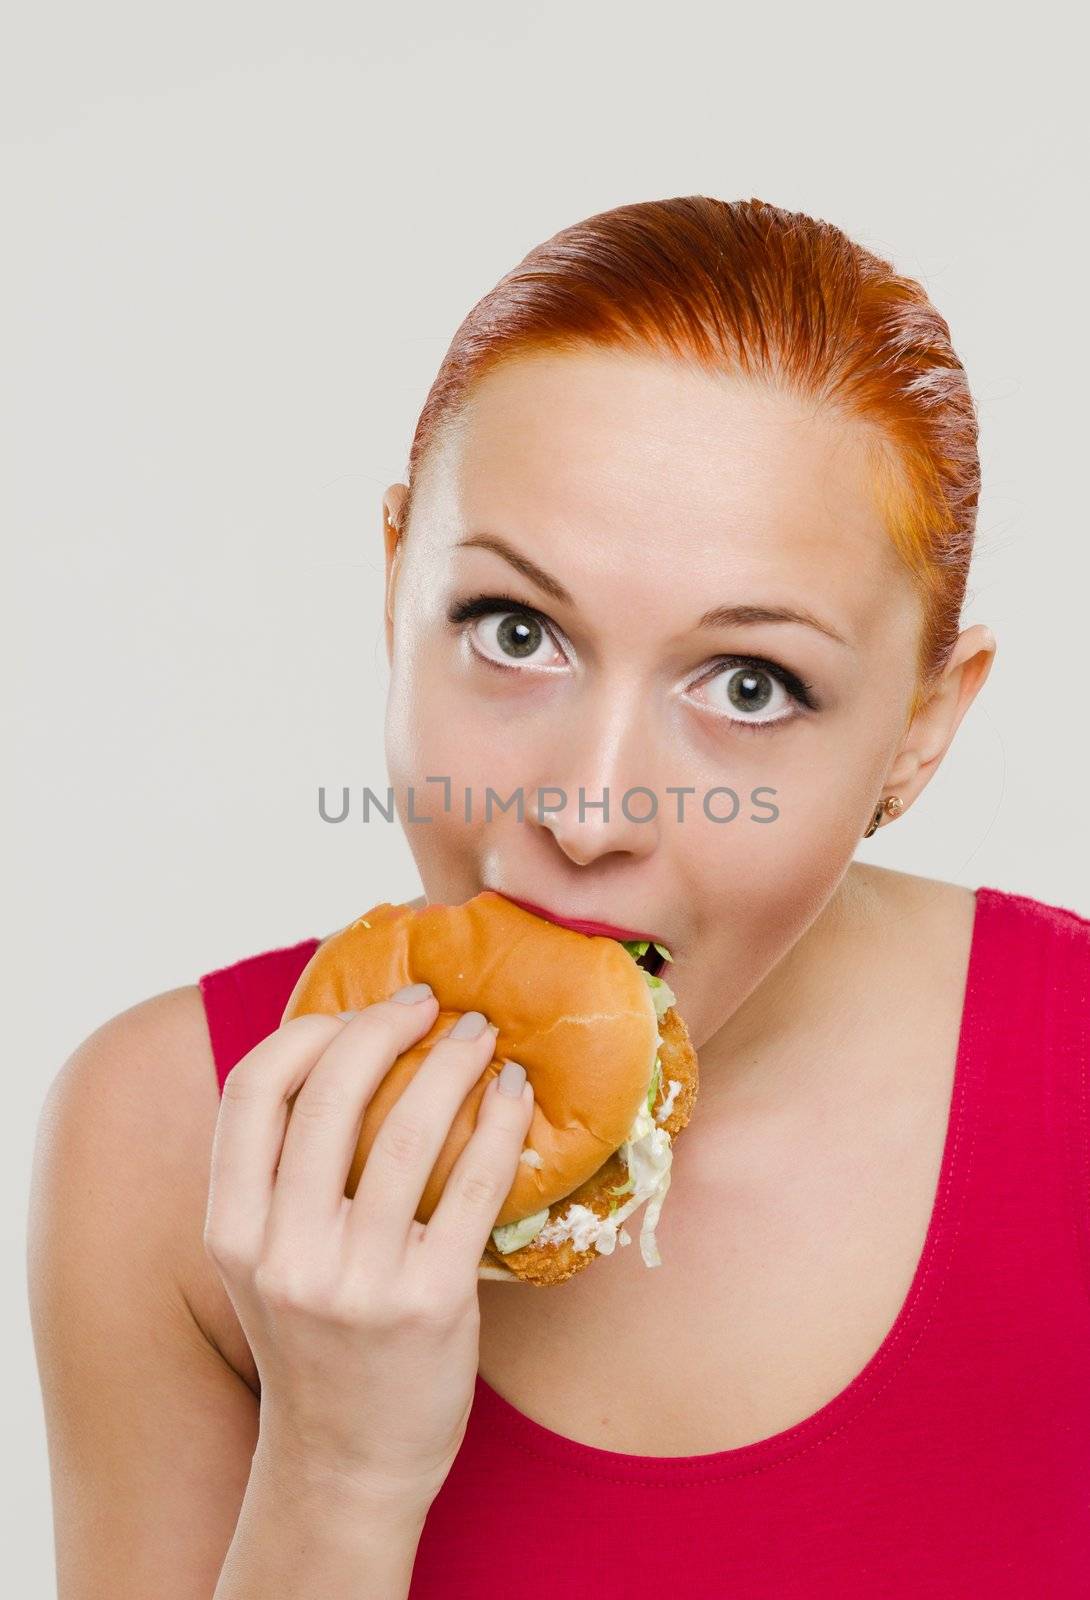 Woman eating hamburger by nikitabuida